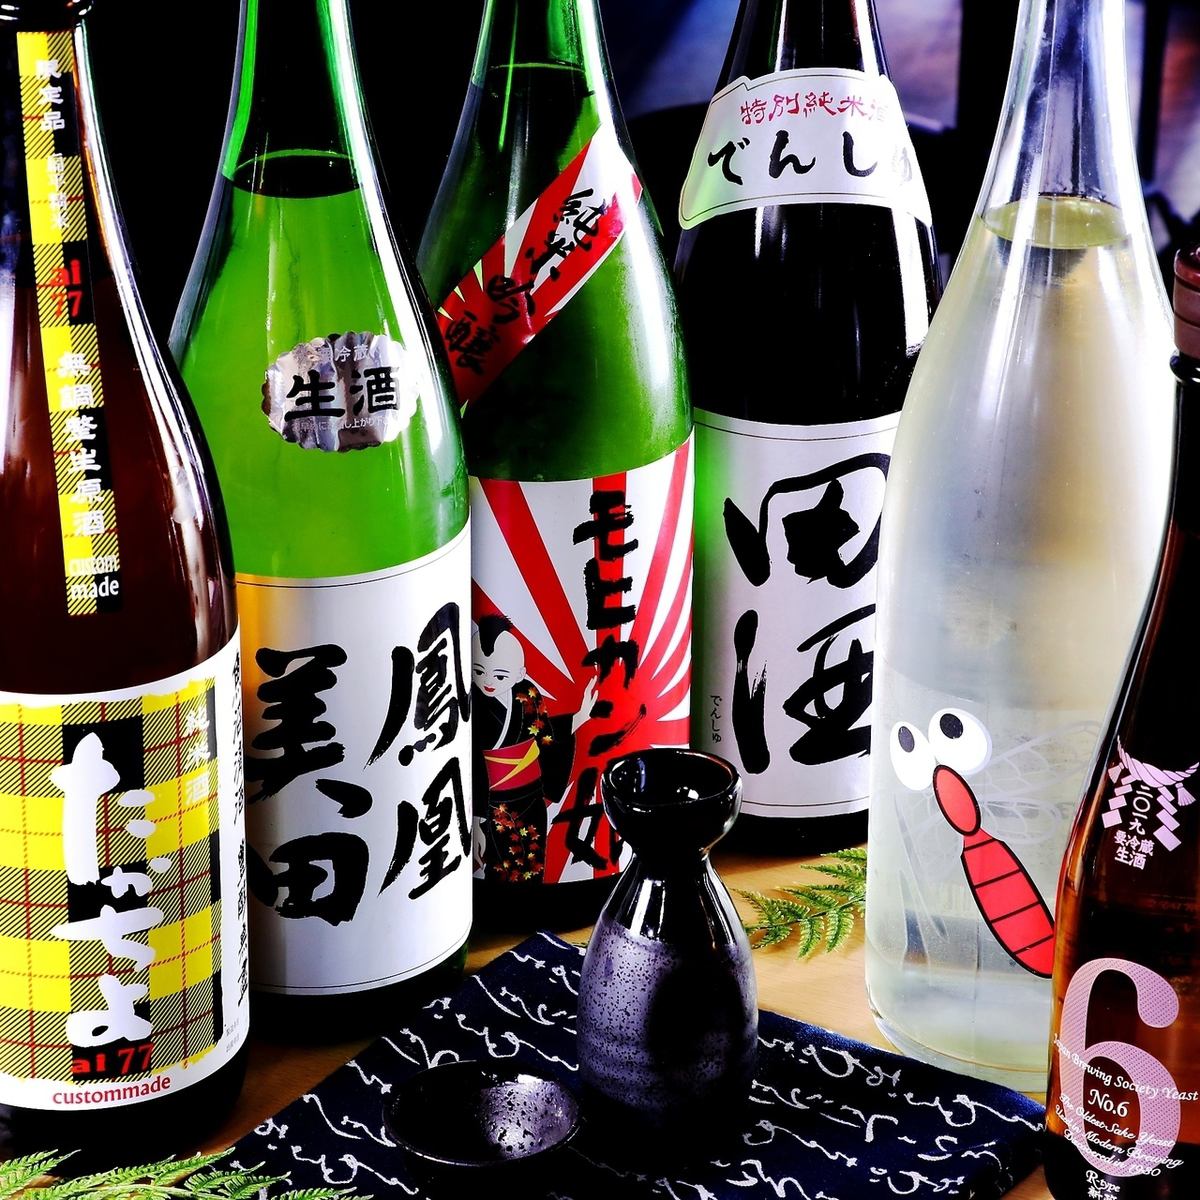 還有電酒、有馬No6等人氣品牌，也請品嚐日本酒！